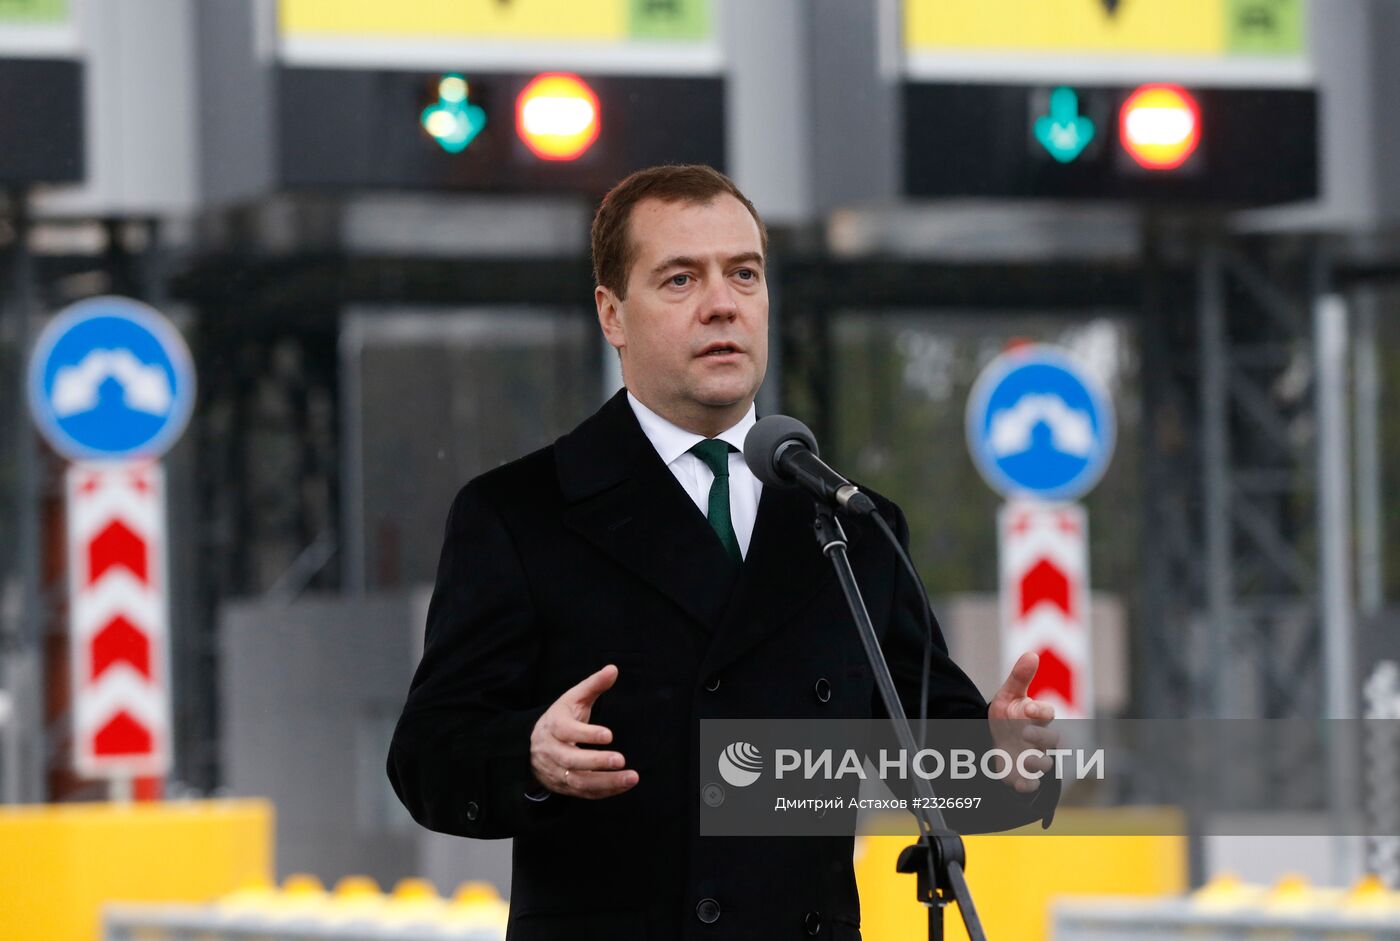 Д.Медведев открыл новую автодорогу в Подмосковье